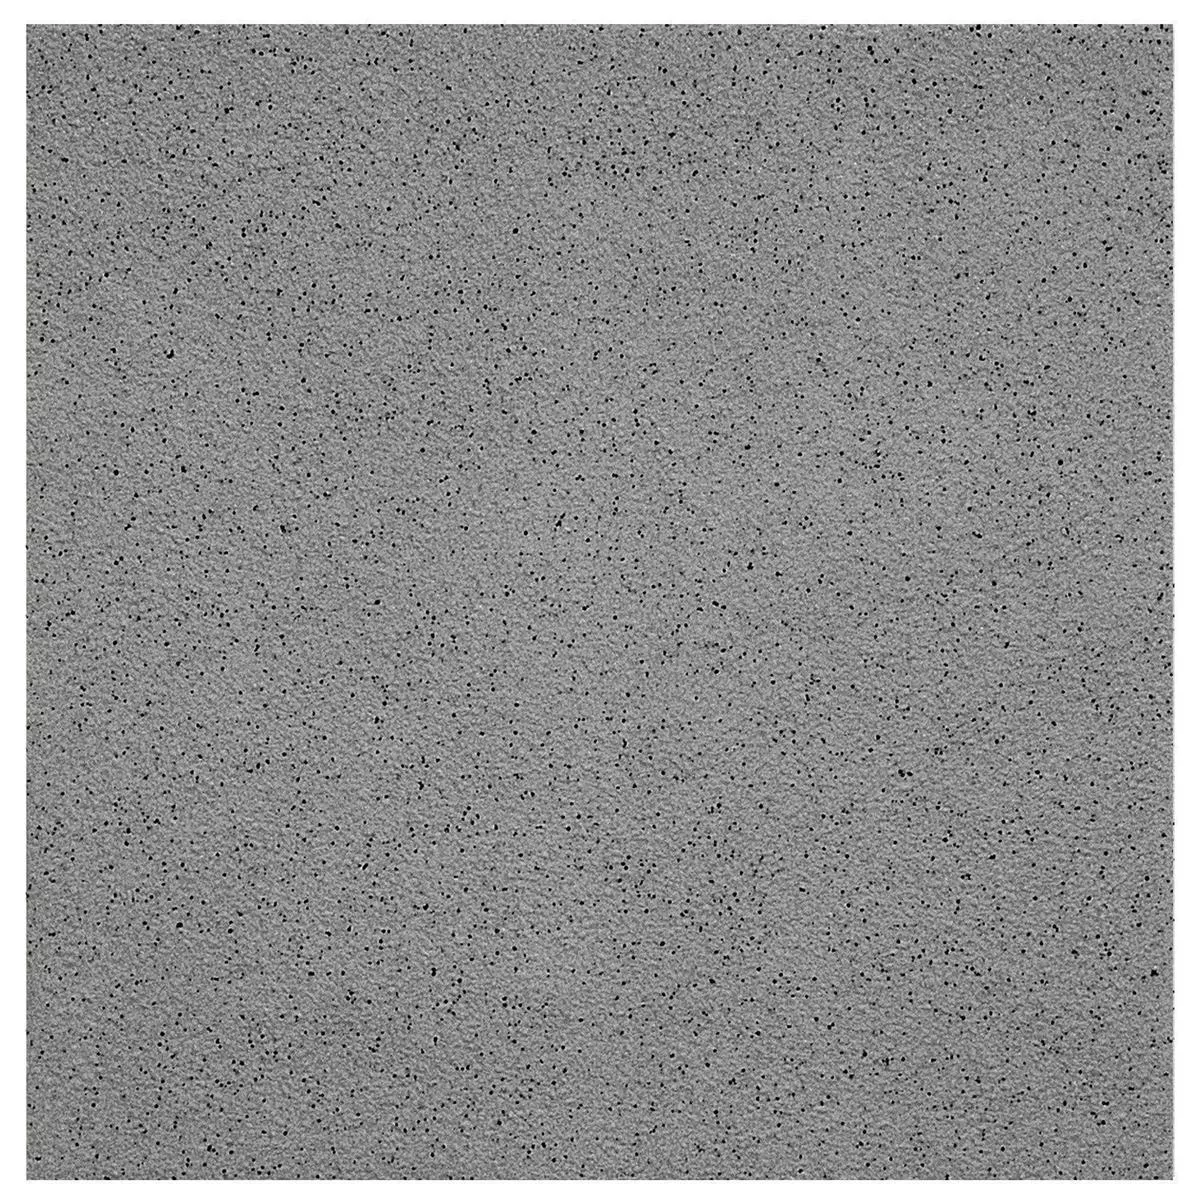 Πλακάκι Δαπέδου Ψιλό Σιτάρι R11/B Ανθρακίτης 20x20cm